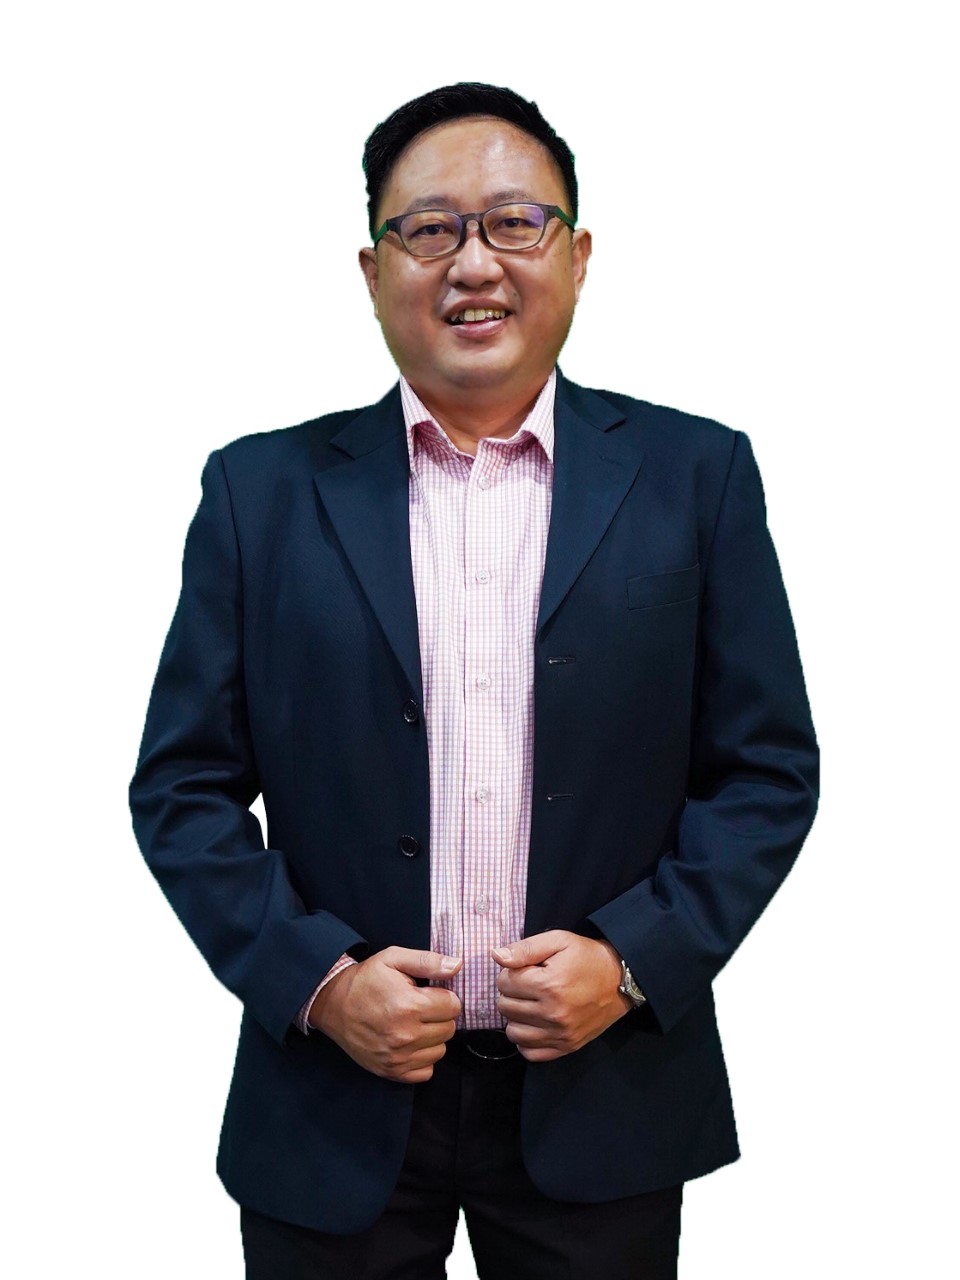 Ian Lim